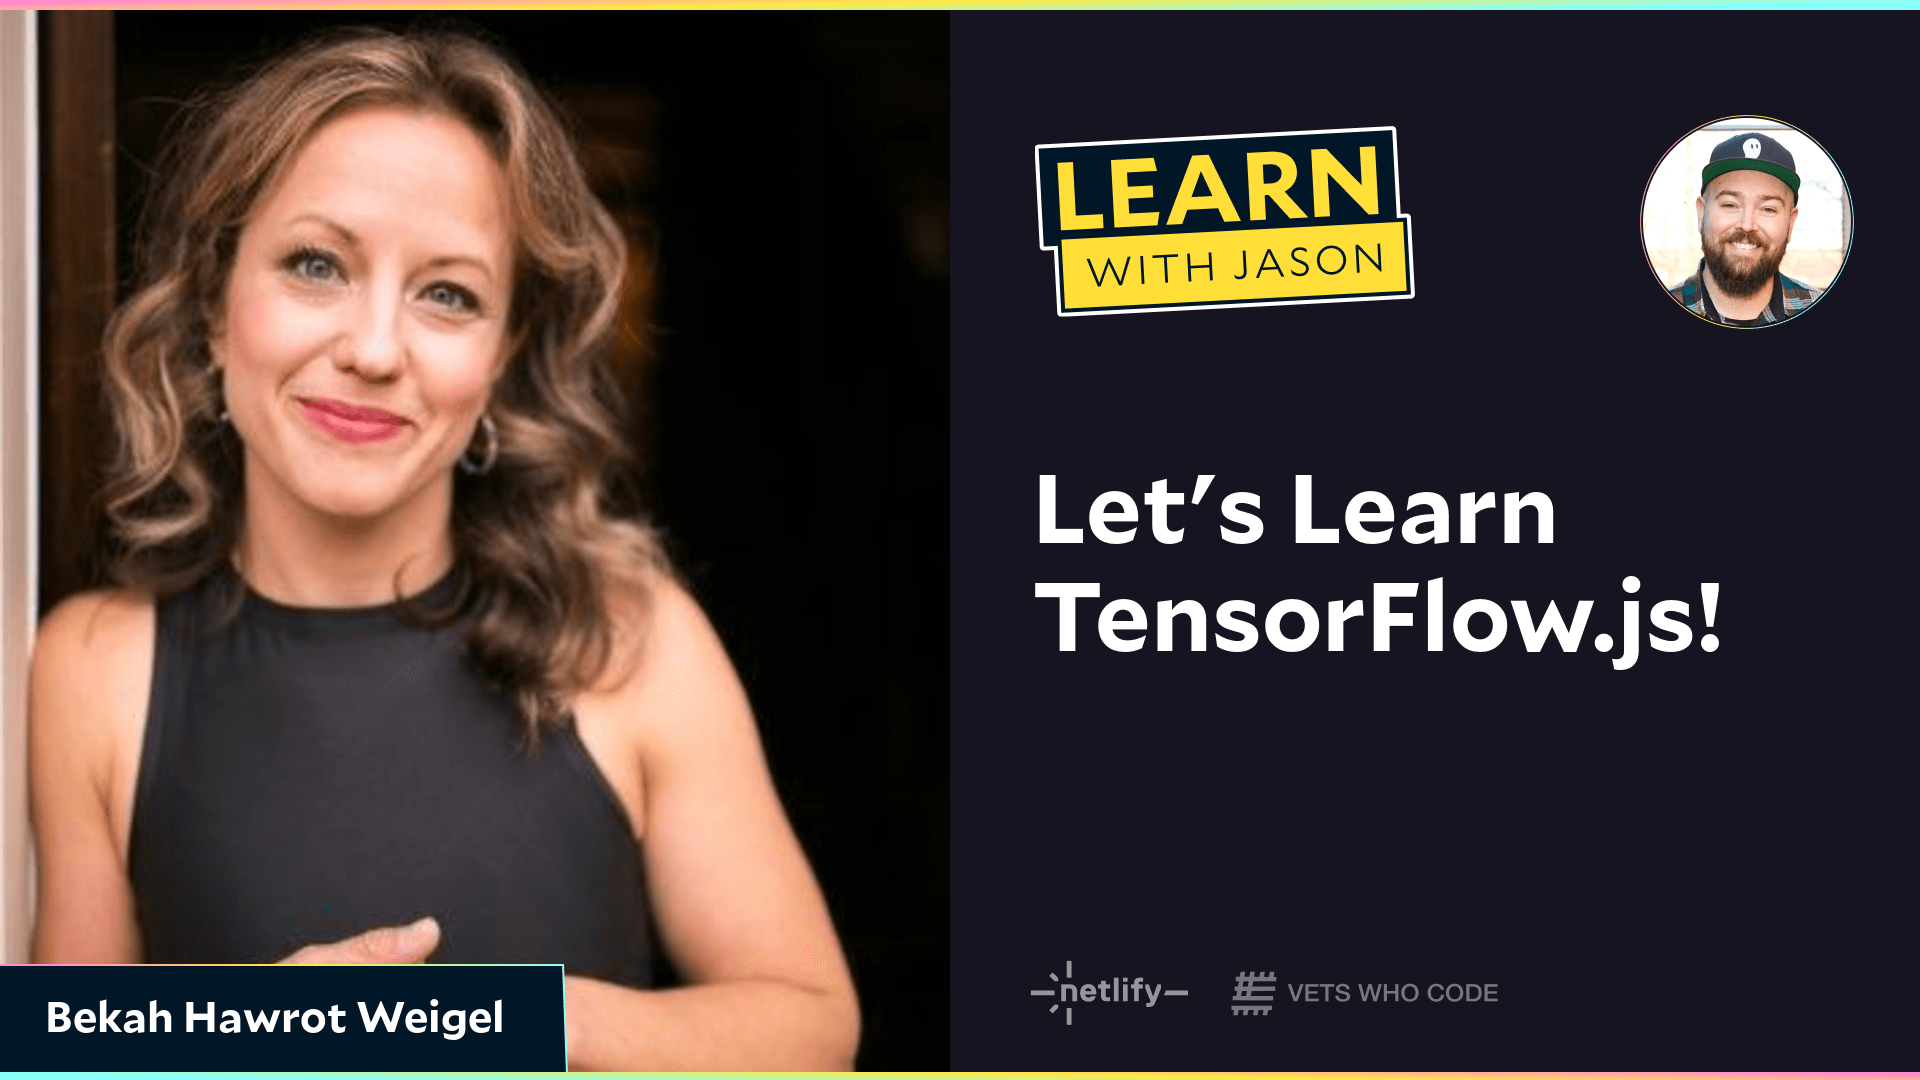 Let's Learn TensorFlow.js! (with Bekah Hawrot Weigel)